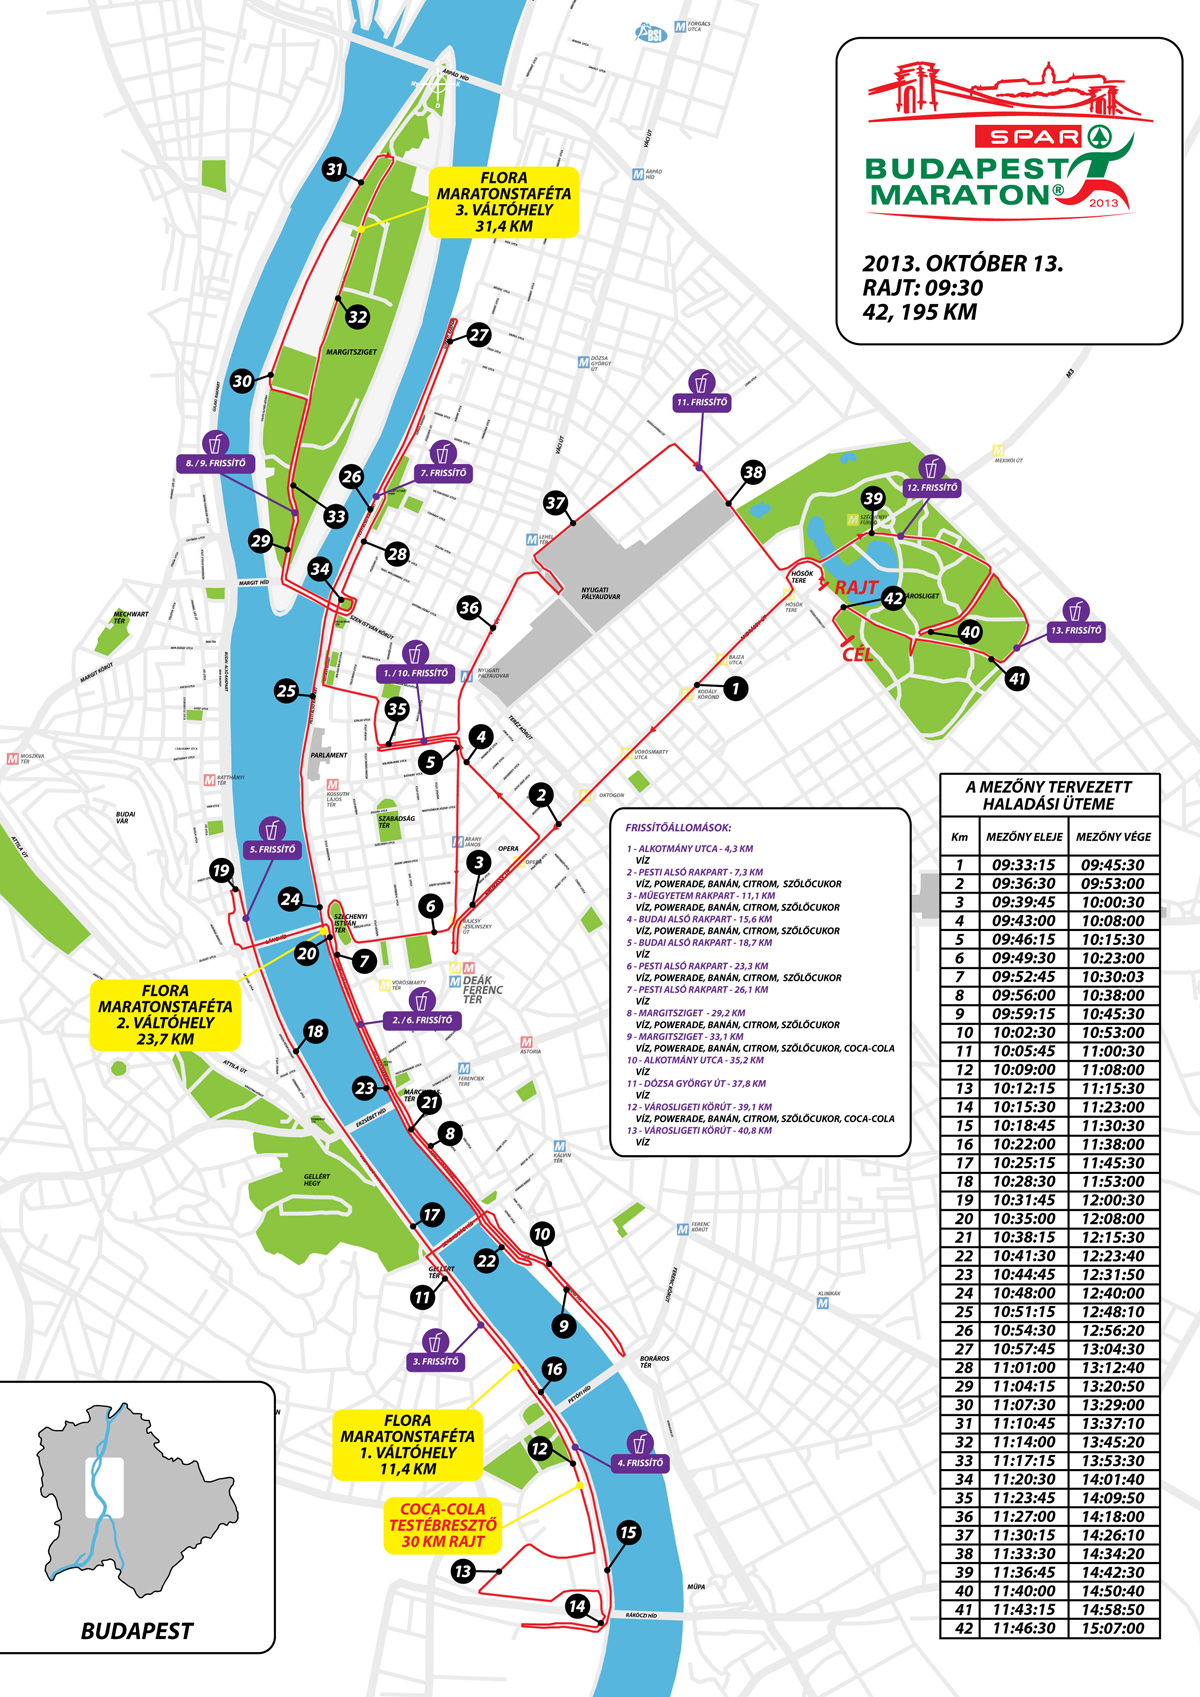 budapest útvonal térkép 28. Spar Budapest Maraton 2013 Térképek   Futanet.hu budapest útvonal térkép